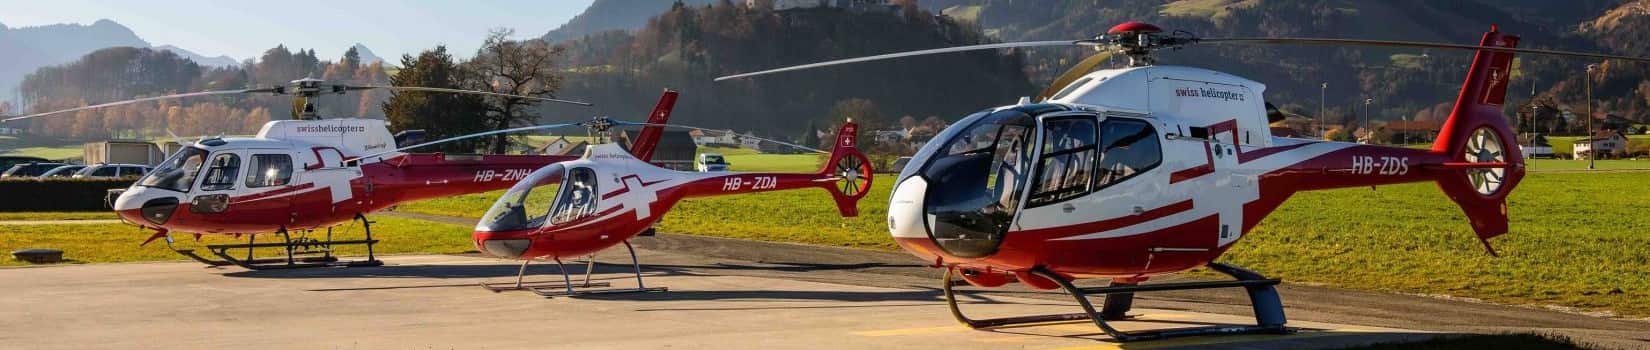 Swiss Helicopter Gruyeres